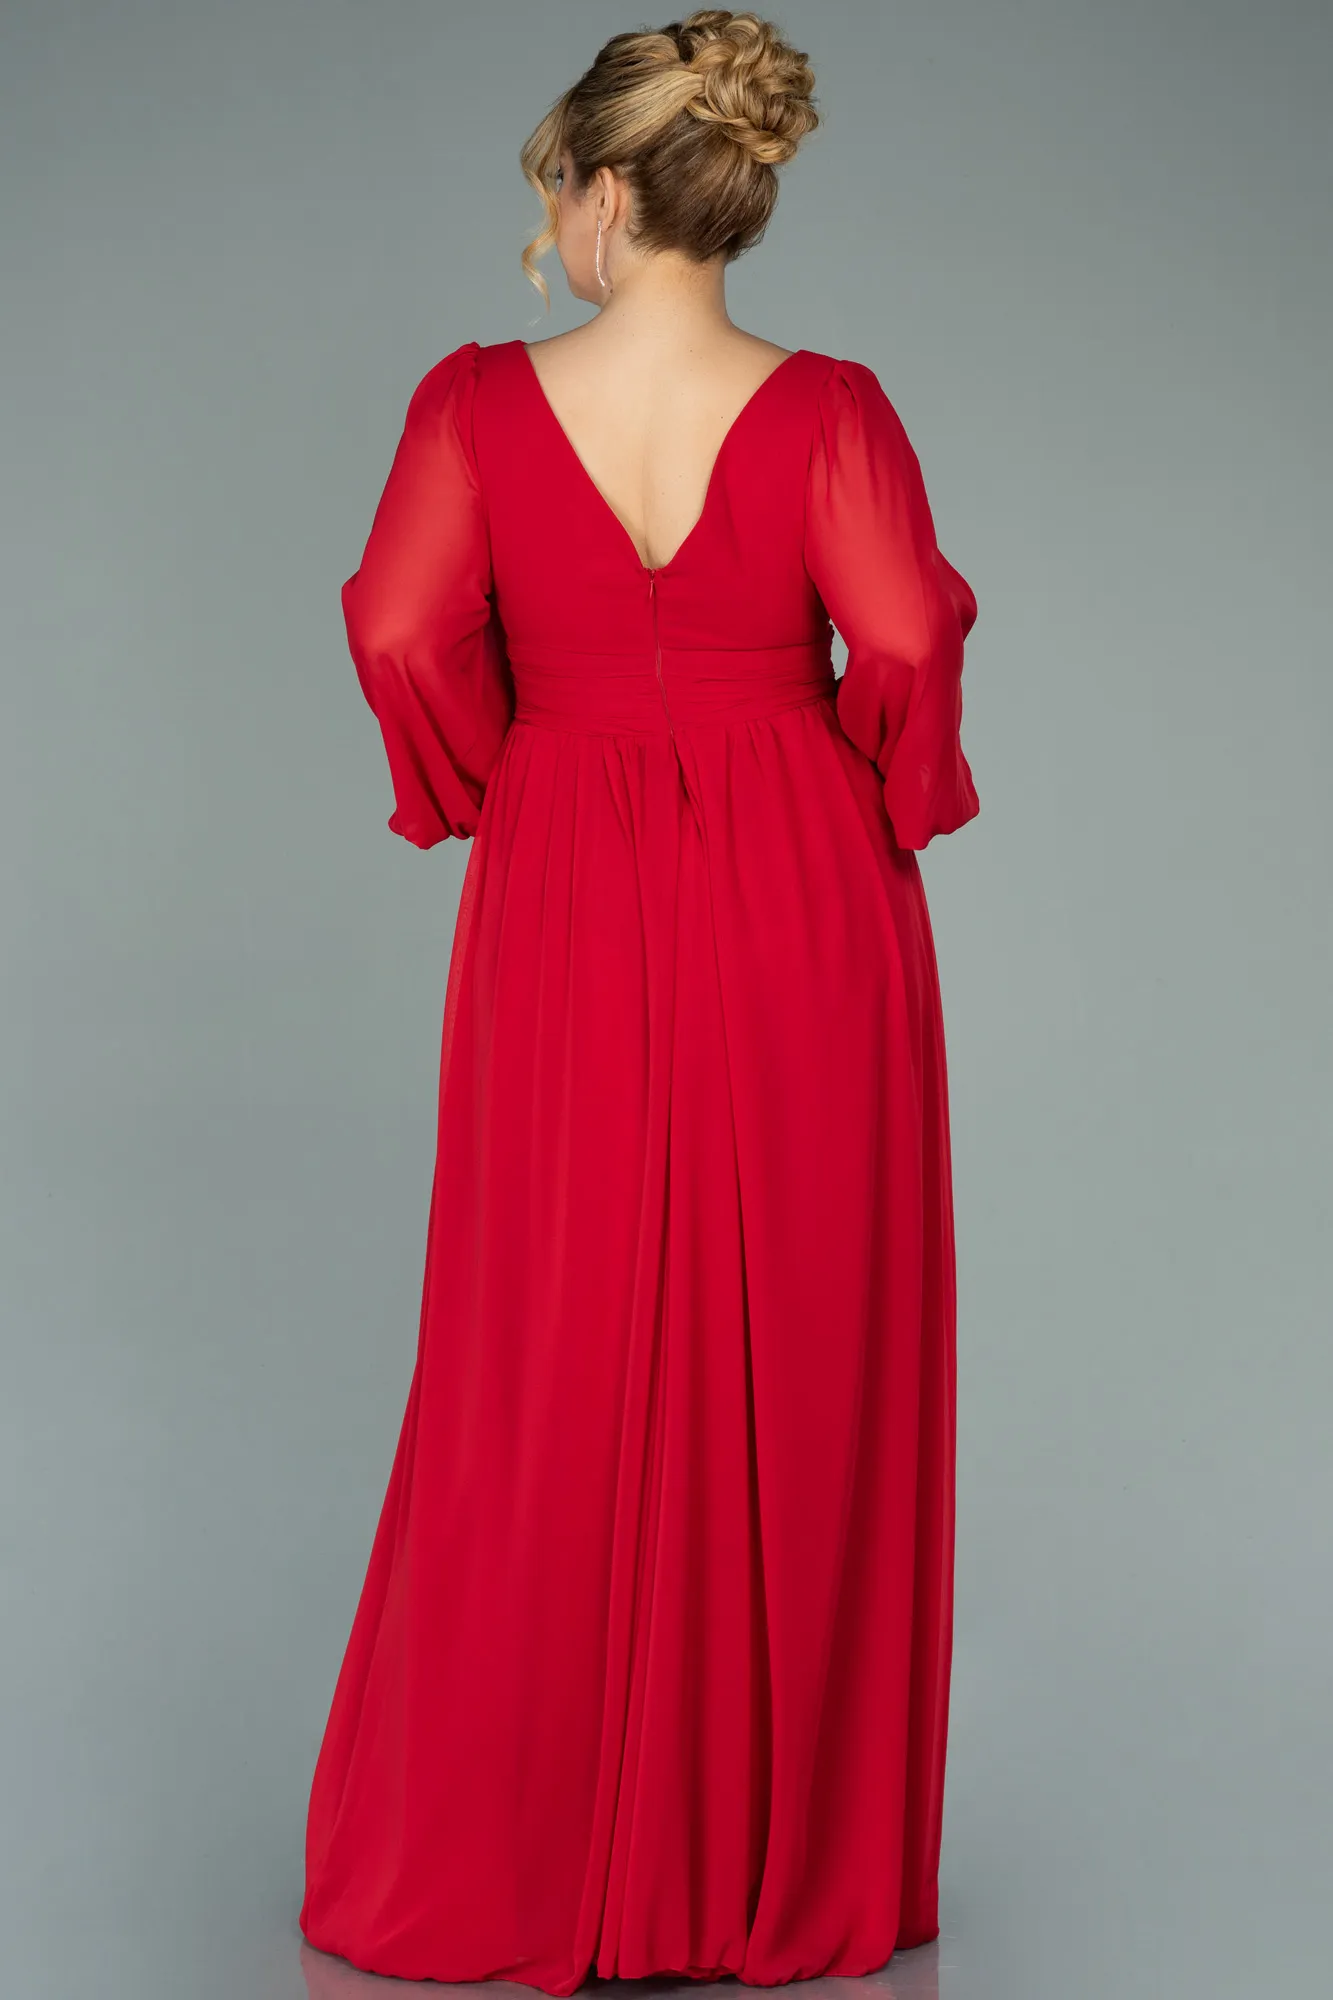 Red-Long Chiffon Oversized Evening Dress ABU1988